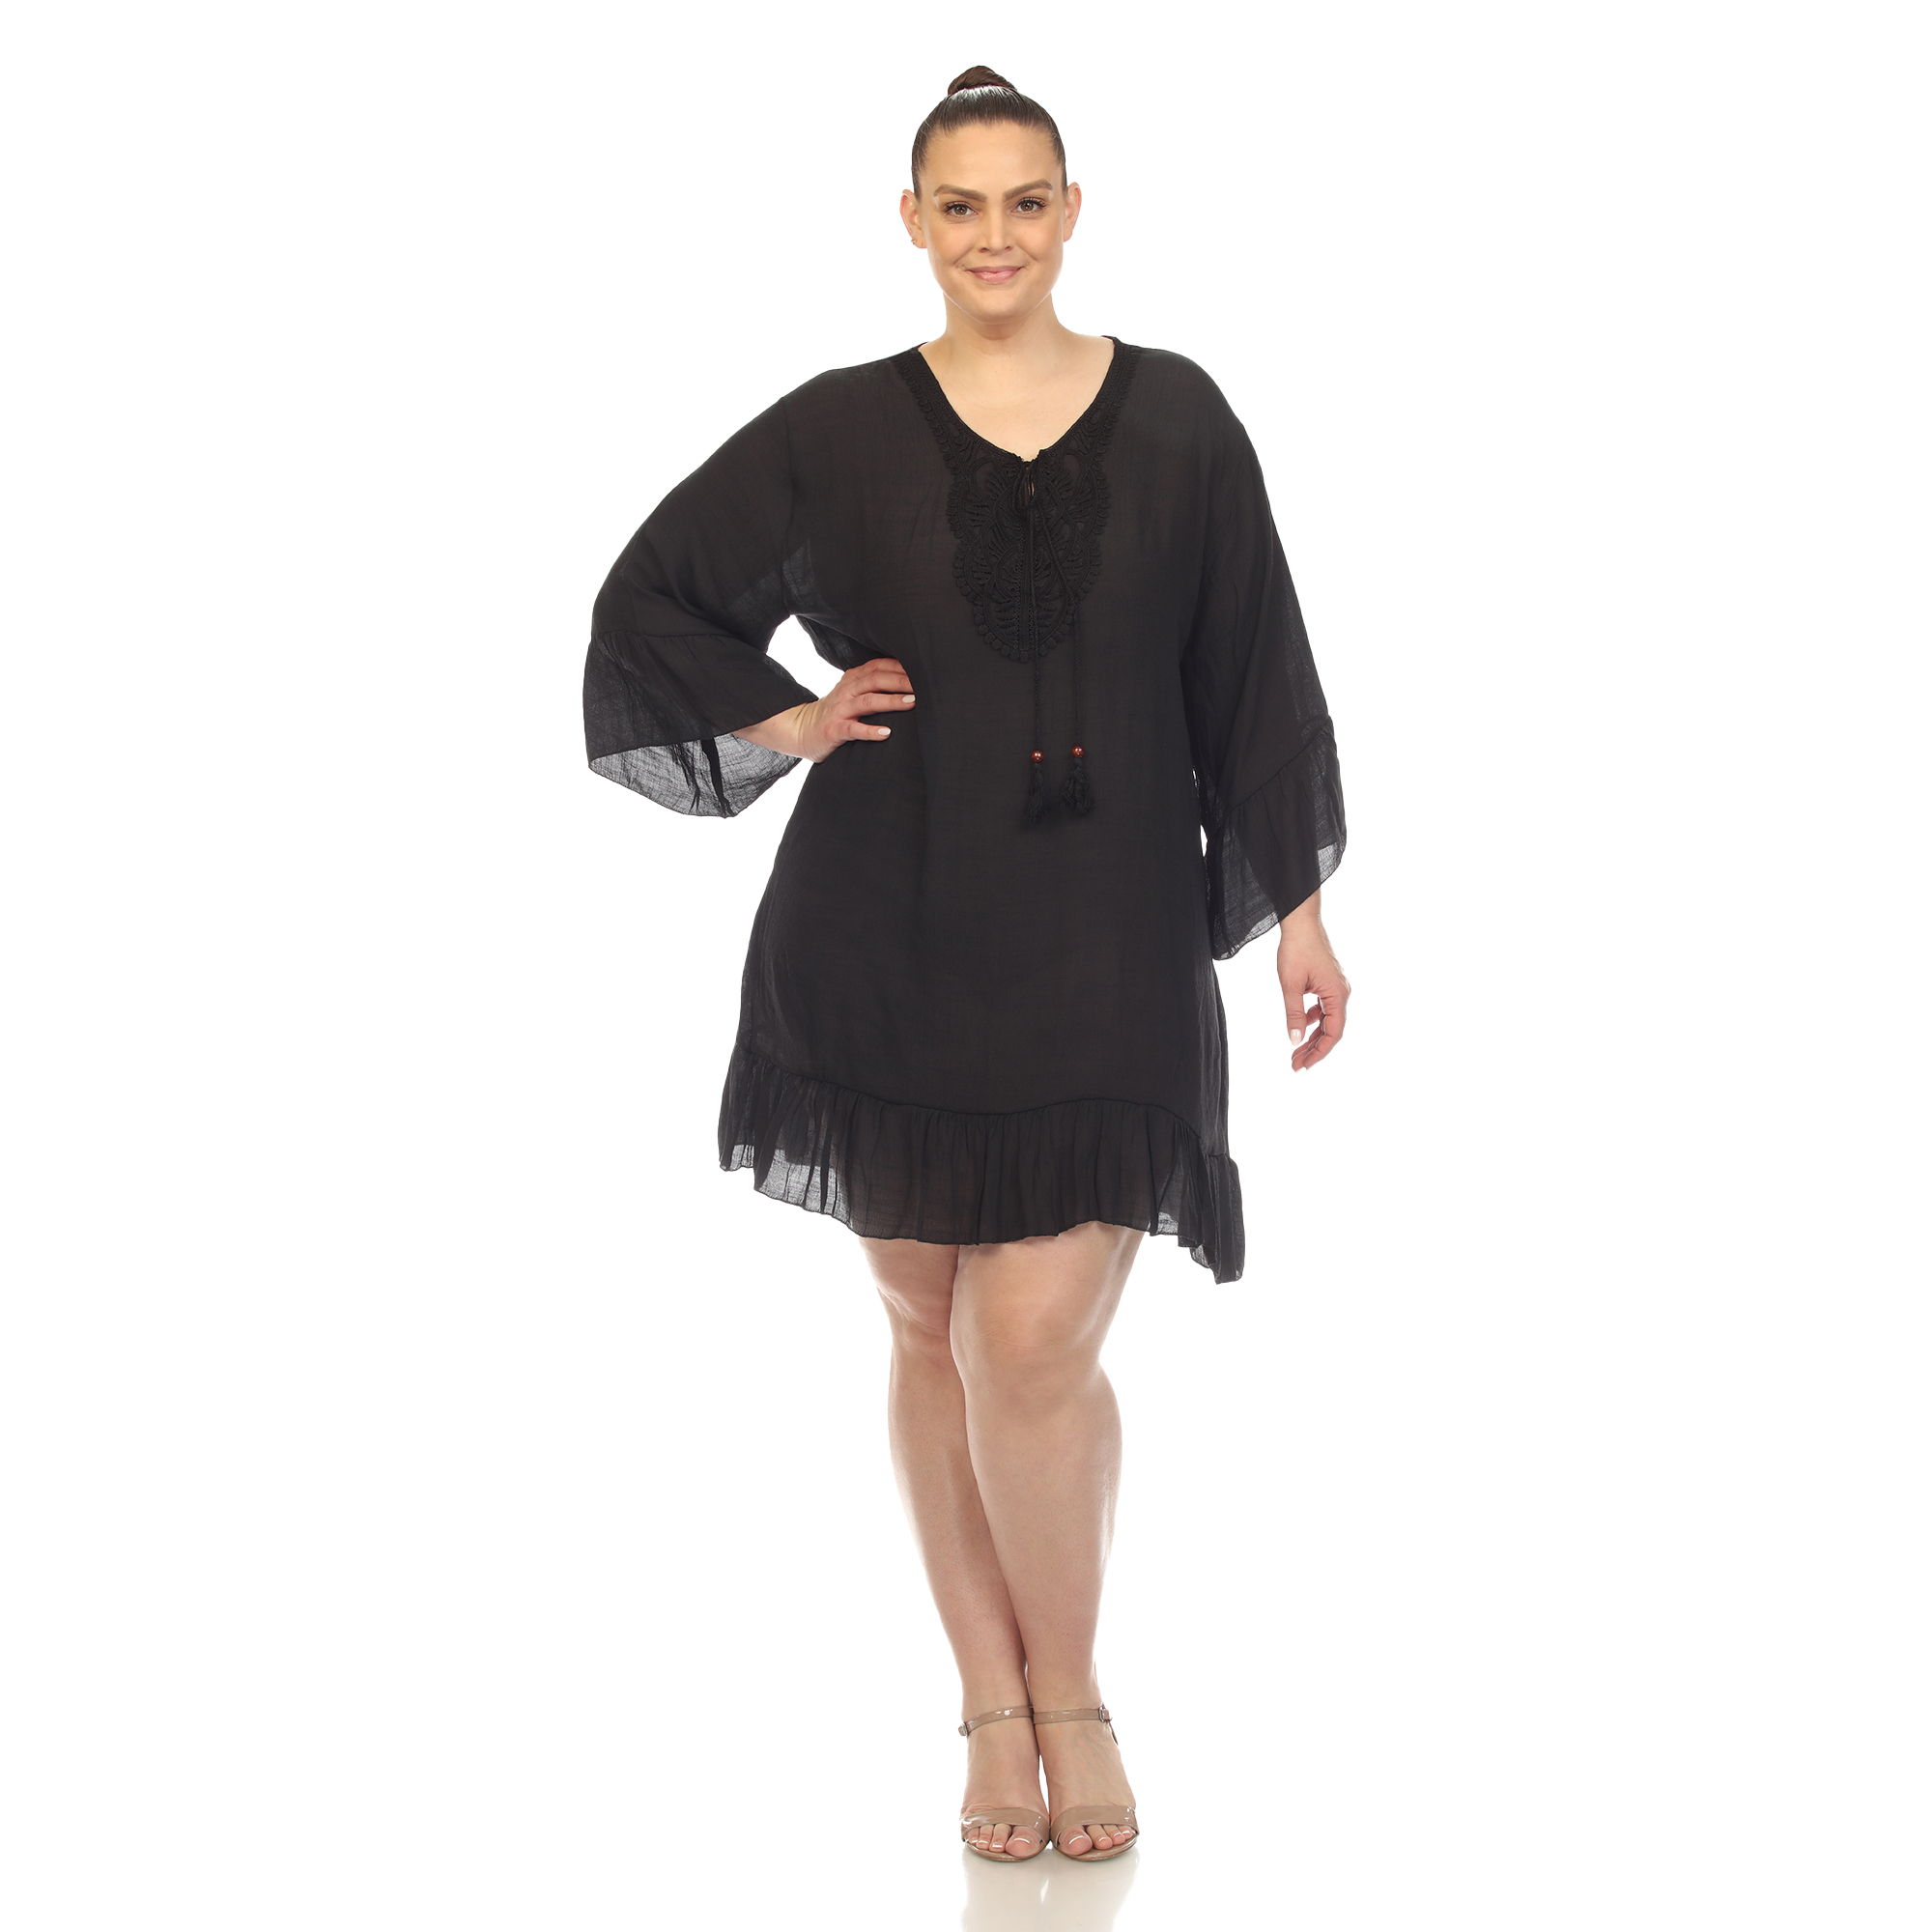 White Mark Women's Sheer Crochet Cover Up Dress - Black, One Size (Plus)